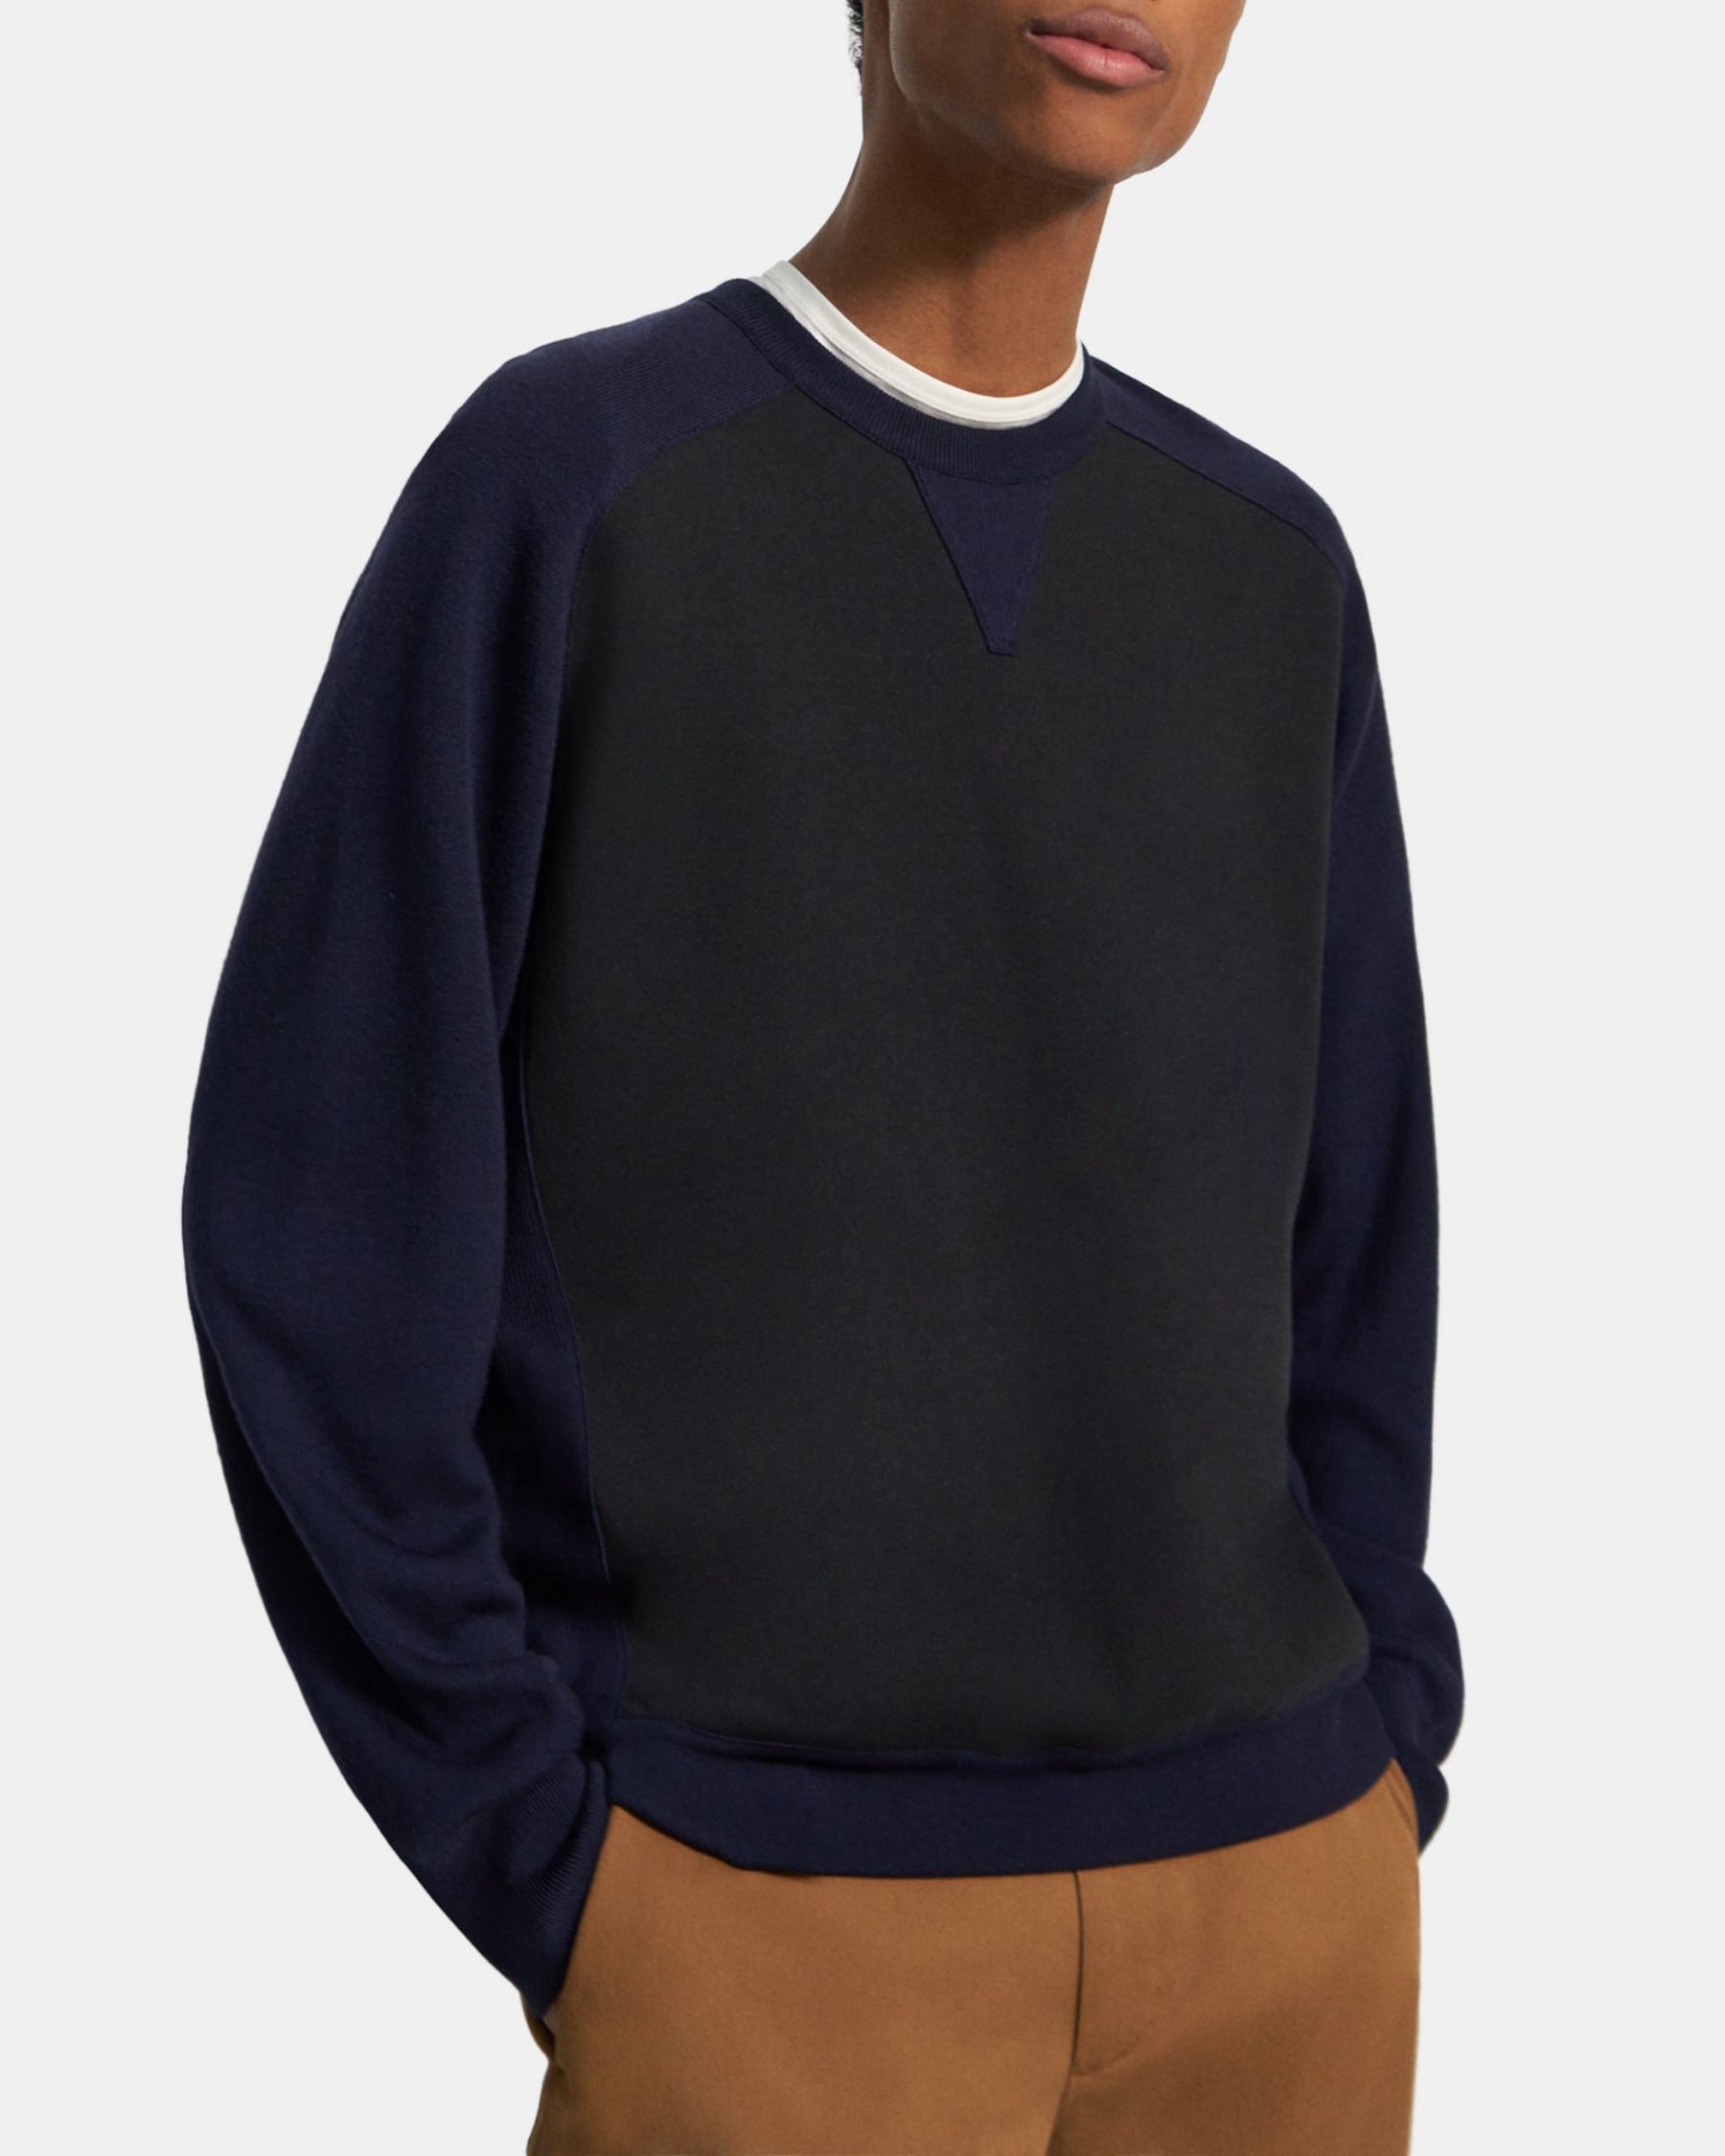 띠어리 Theory Knit Combo Sweatshirt,DEEP NAVY/BLACK